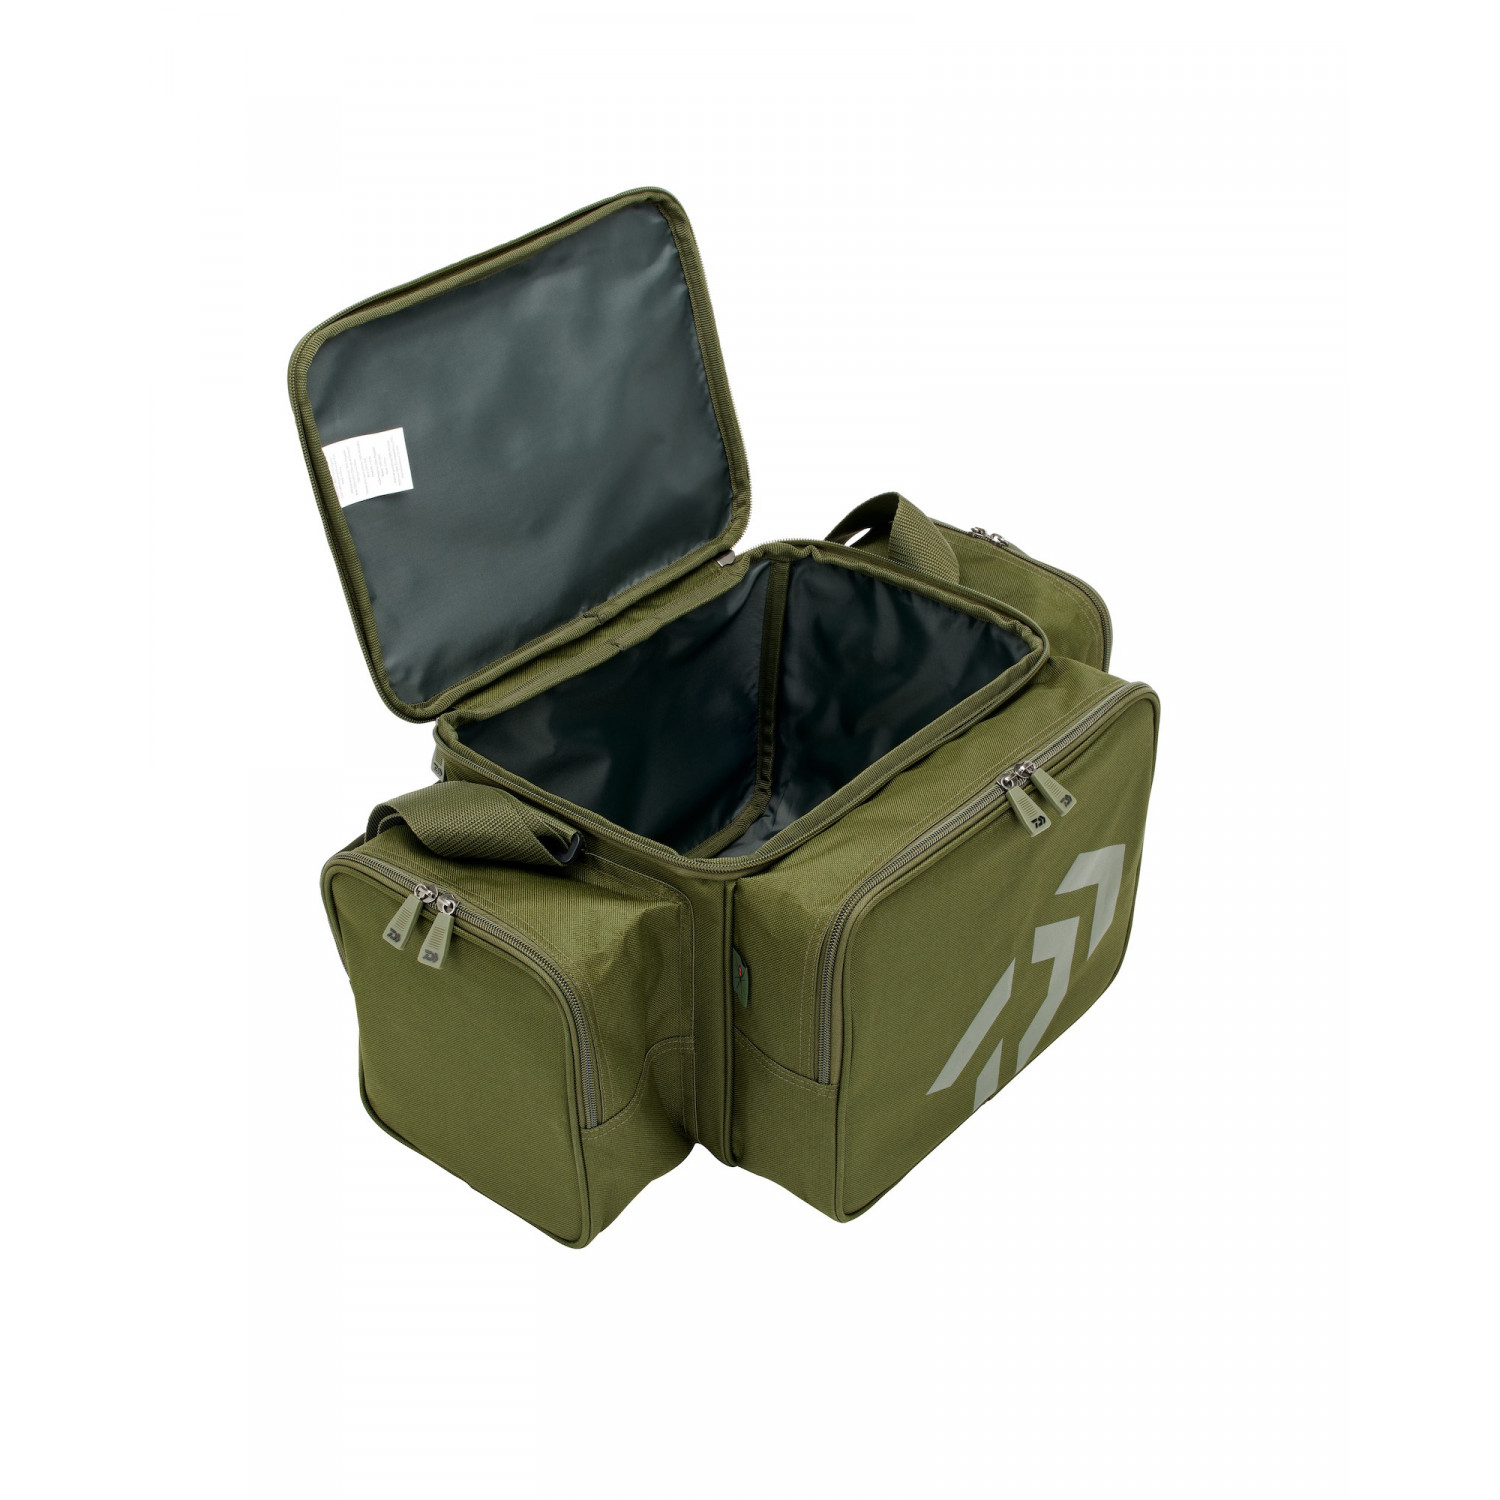 DAIWA Black Widow Compact Tackle Bag Green for Carp Fishing Gear 18705 055